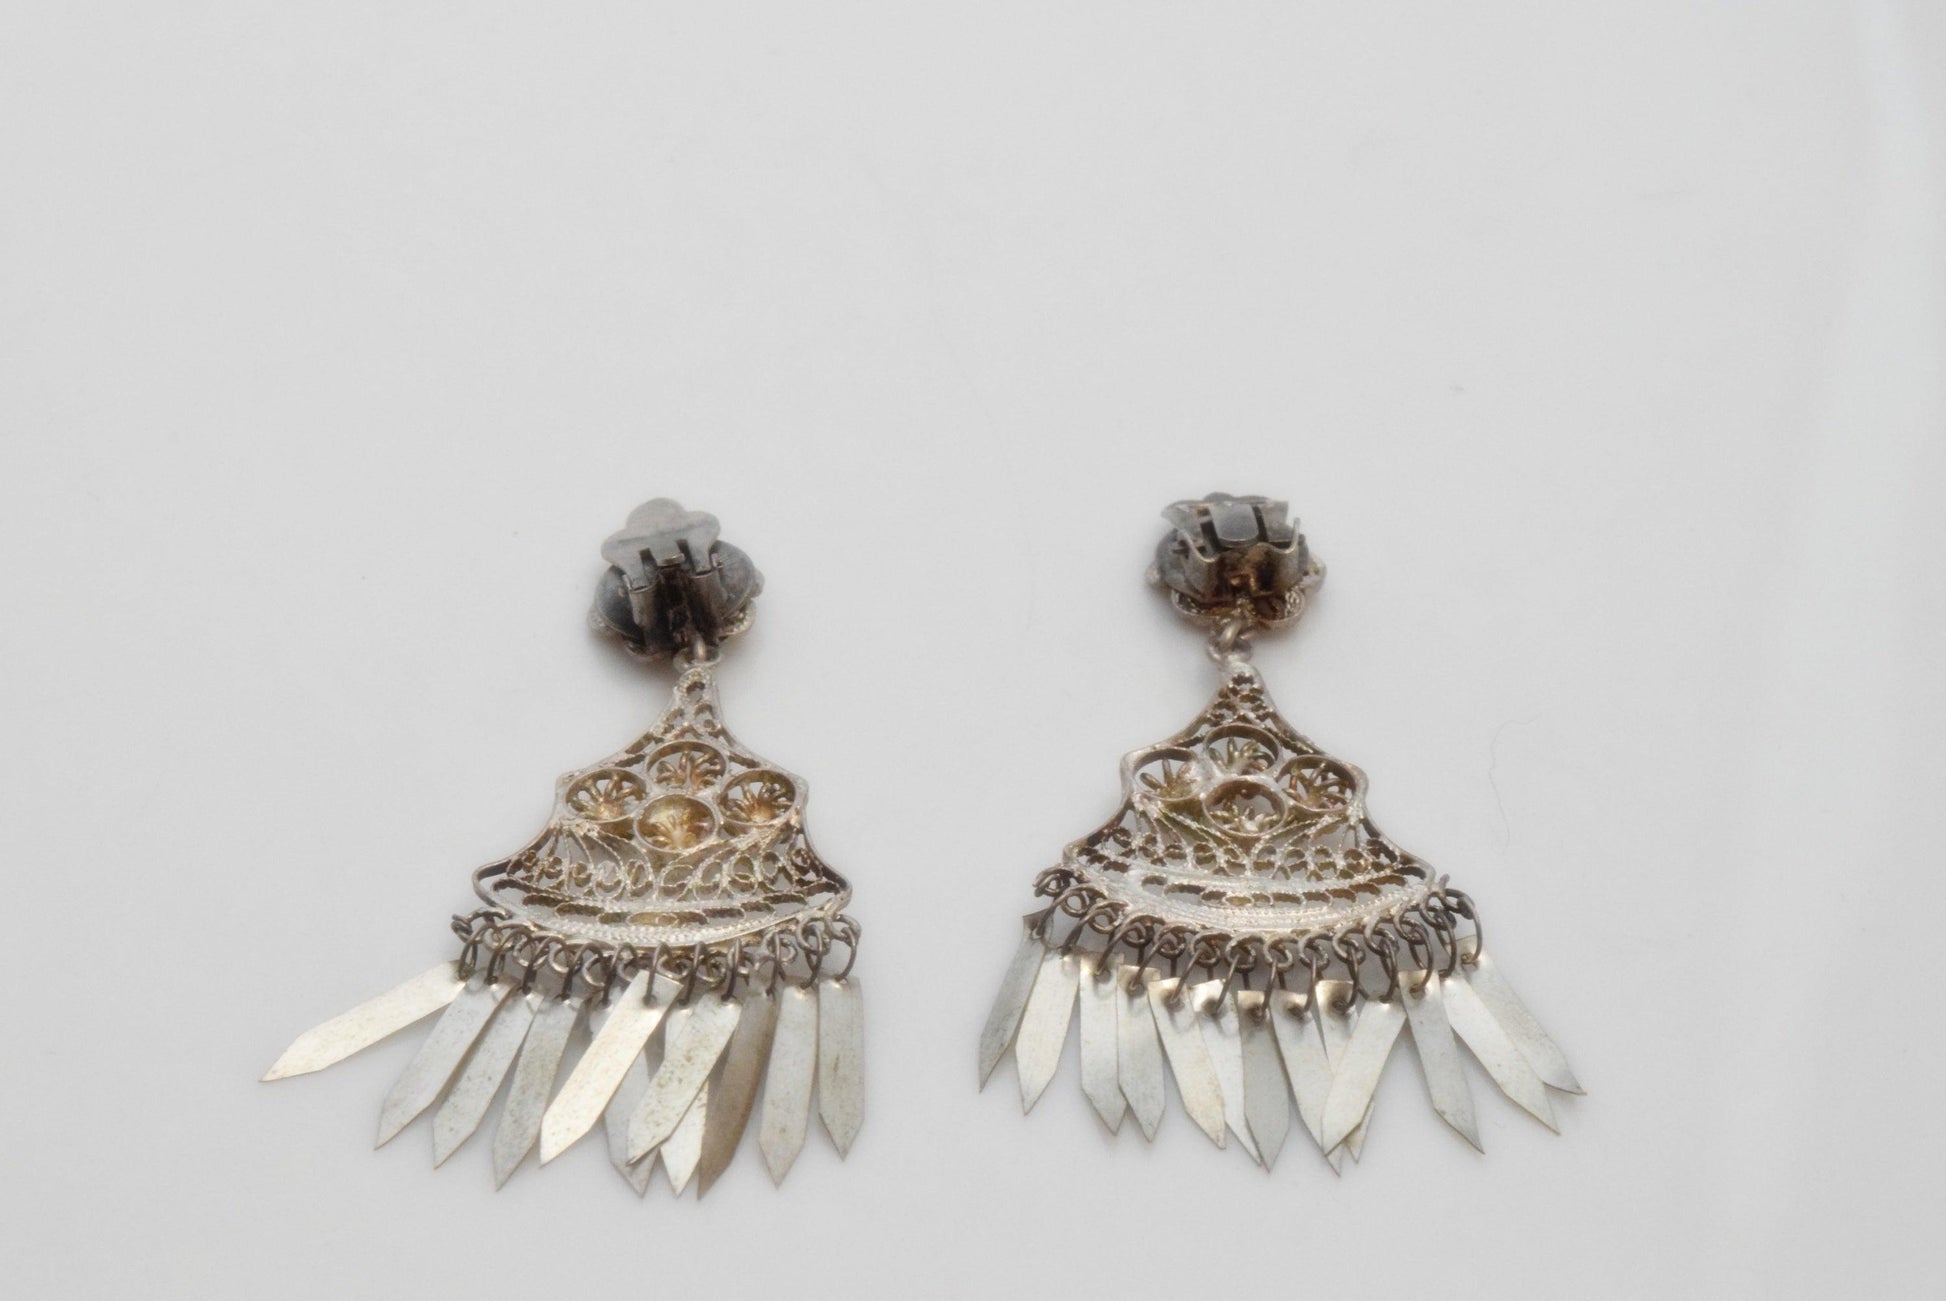 Middle East earrings